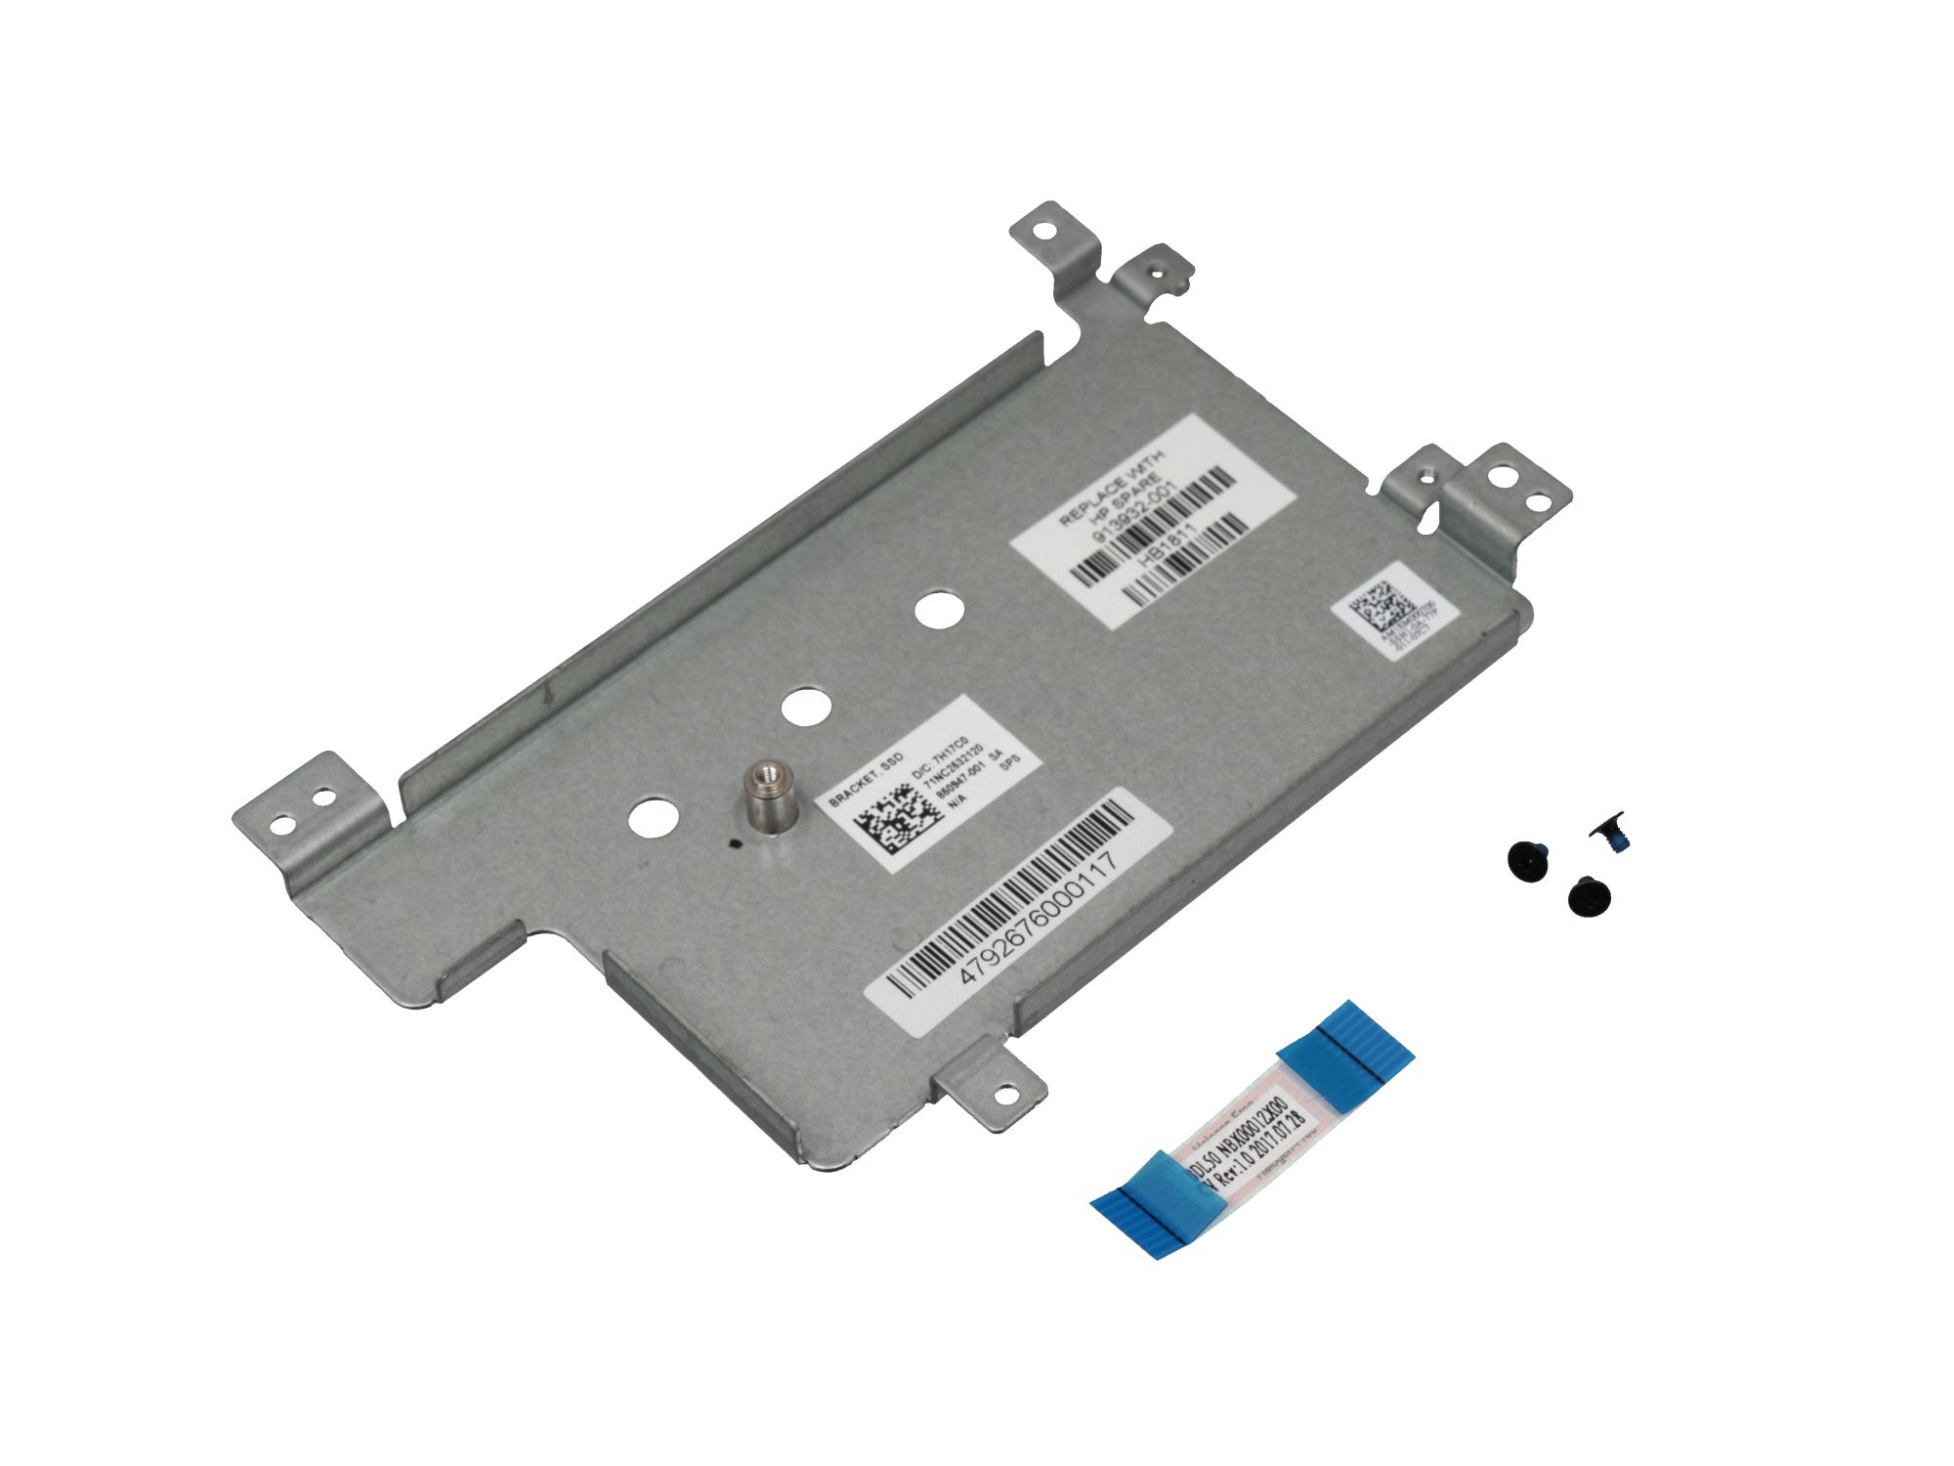 Festplatten-Adapter für den 1. Festplatten Schacht Original für HP EliteBook x360 1030 G2